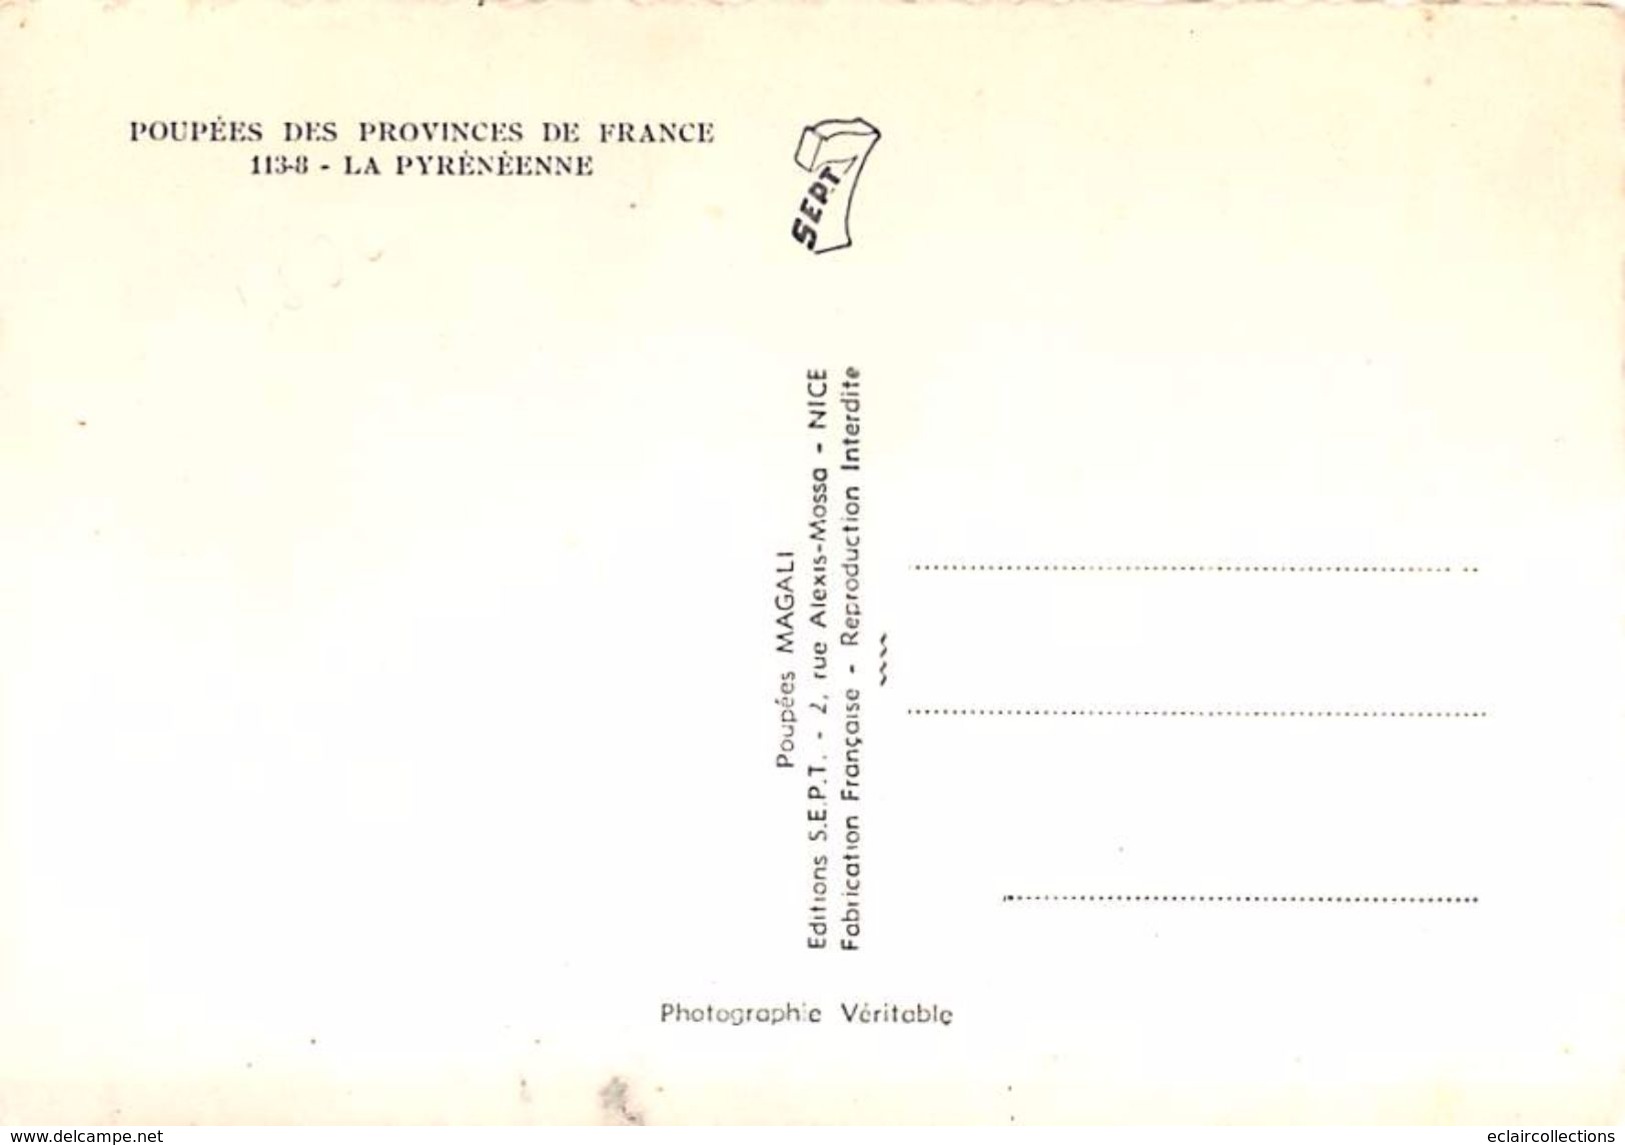 Thème: Poupées....1 lot de 15 Cartes  Poupées des province de France  Format 10 x15 toutes dos vierges   (voir scan)